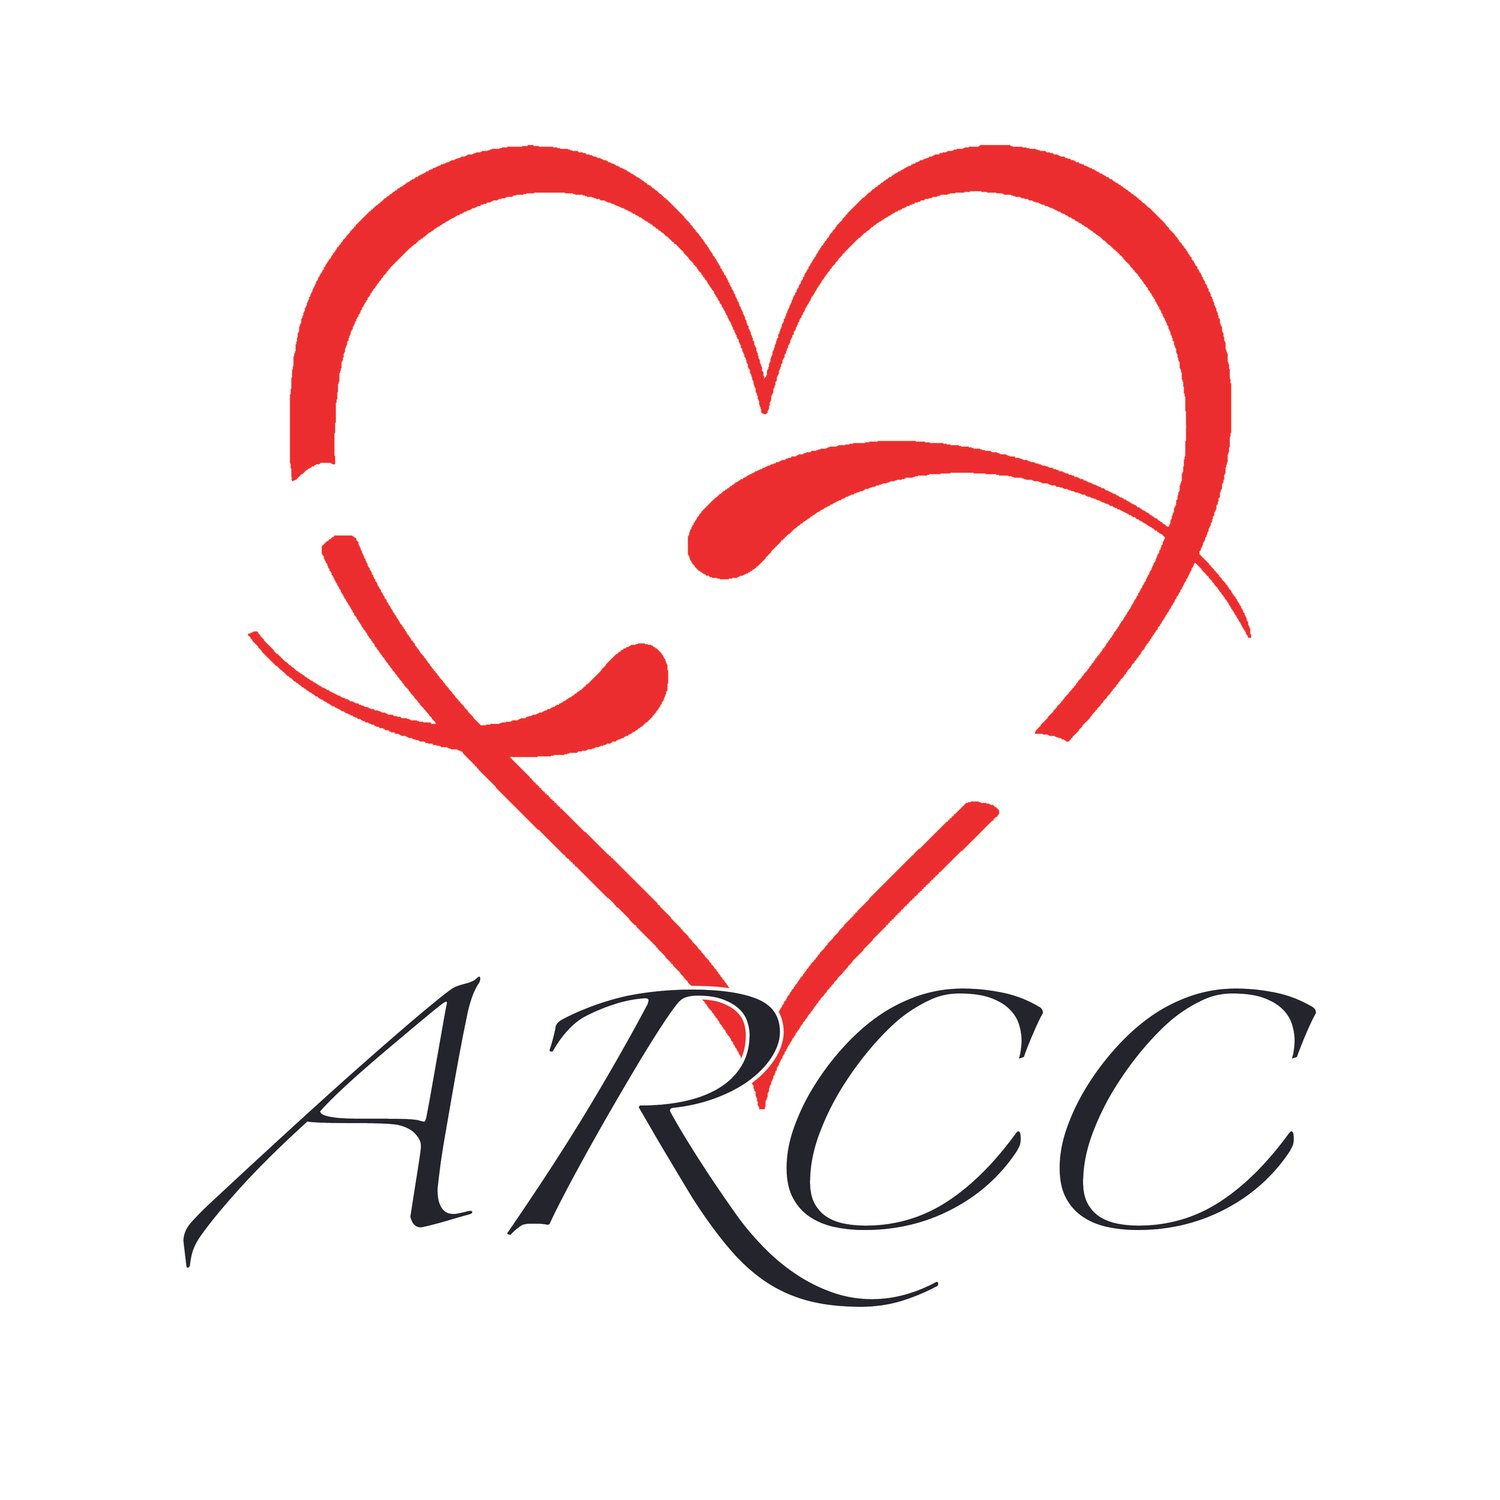 ARCC Lab